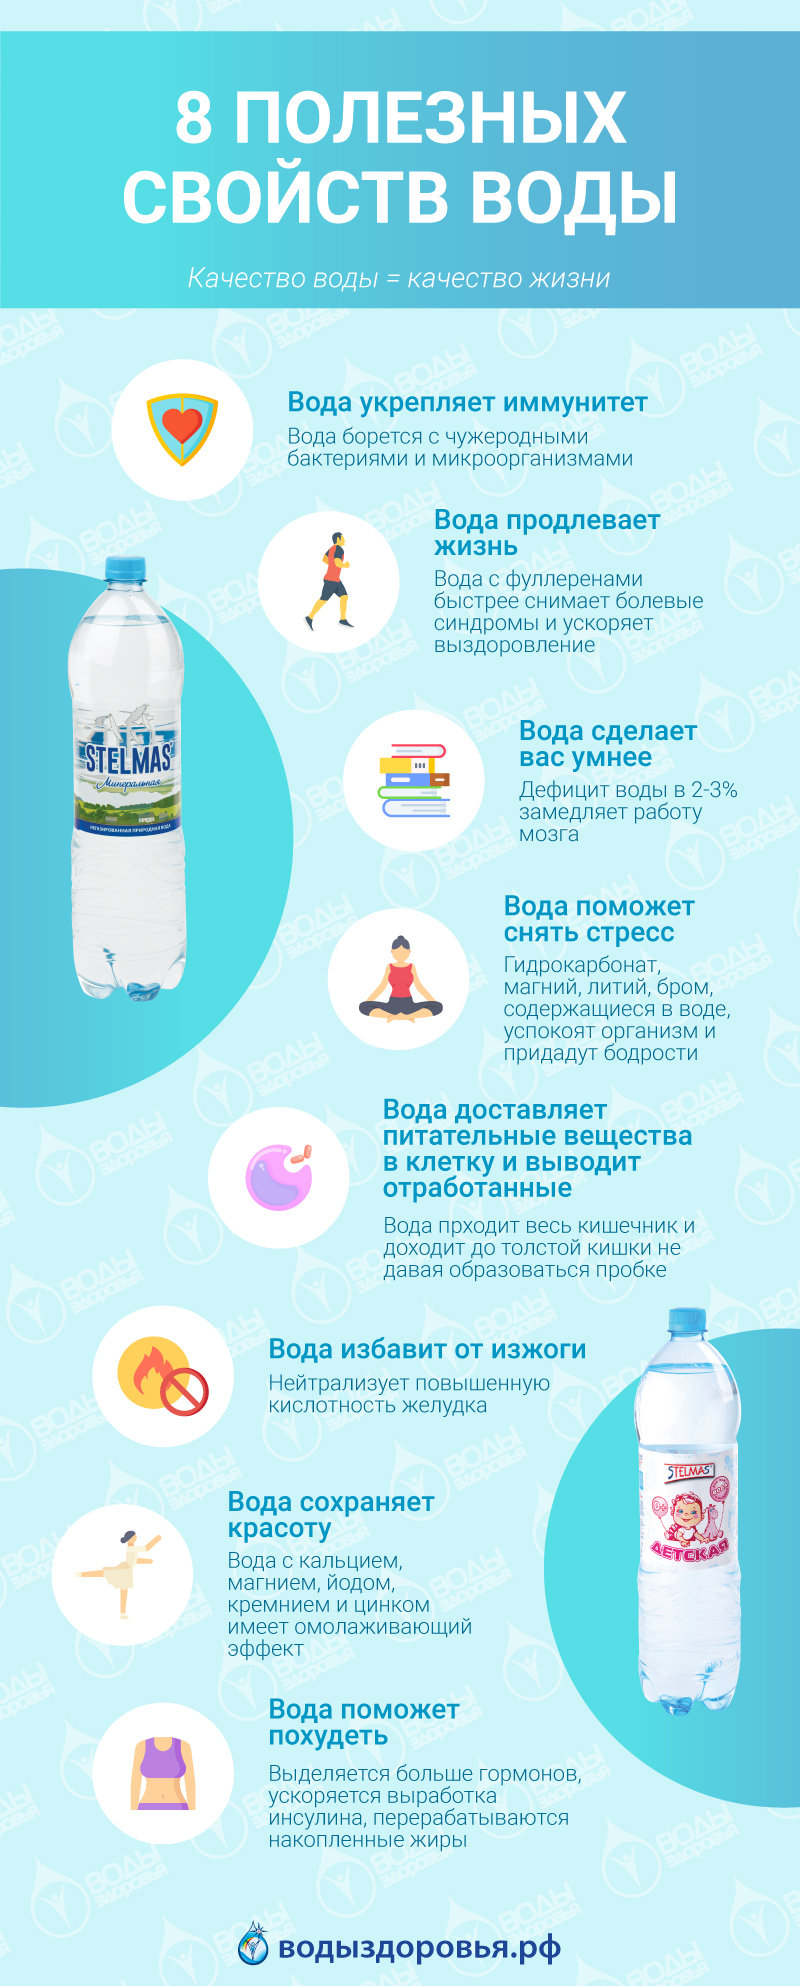 8 полезных свойств воды